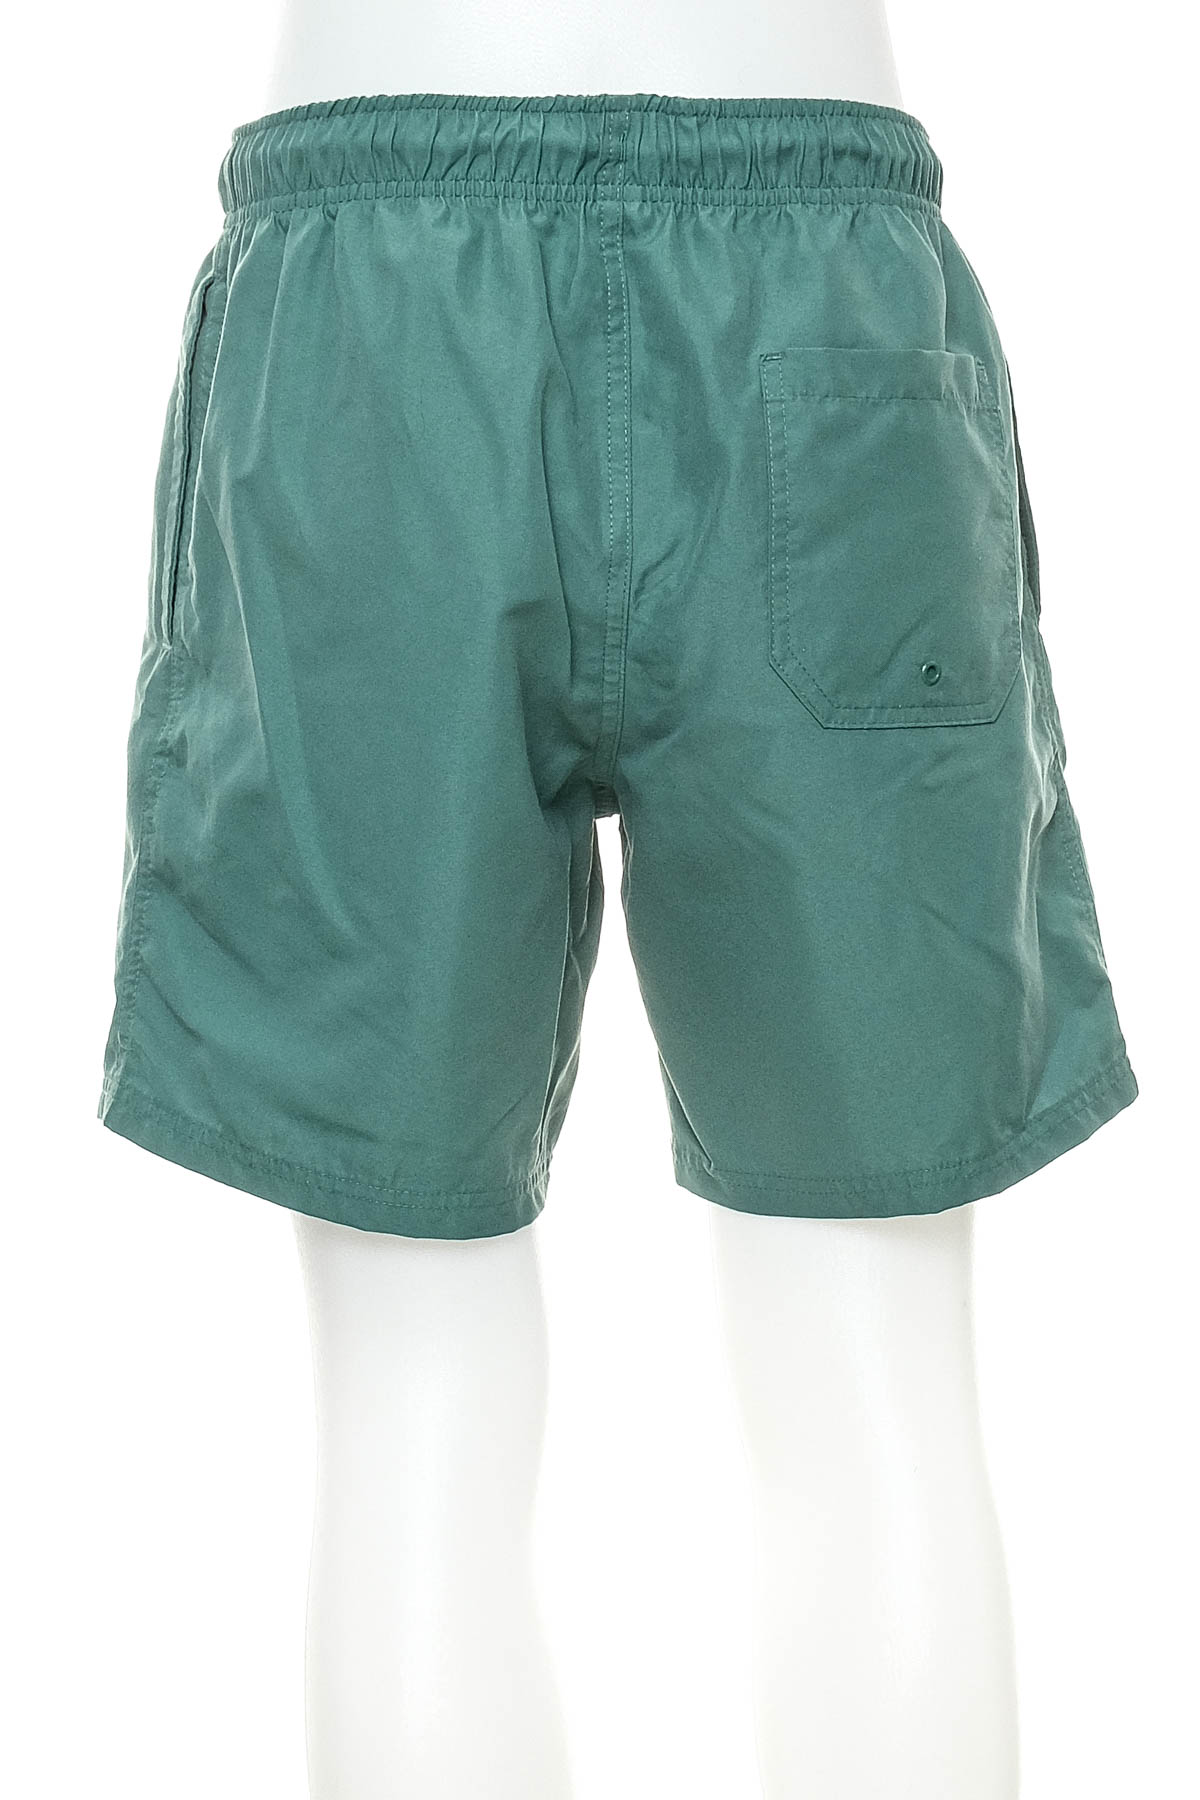 Men's shorts - Anko - 1